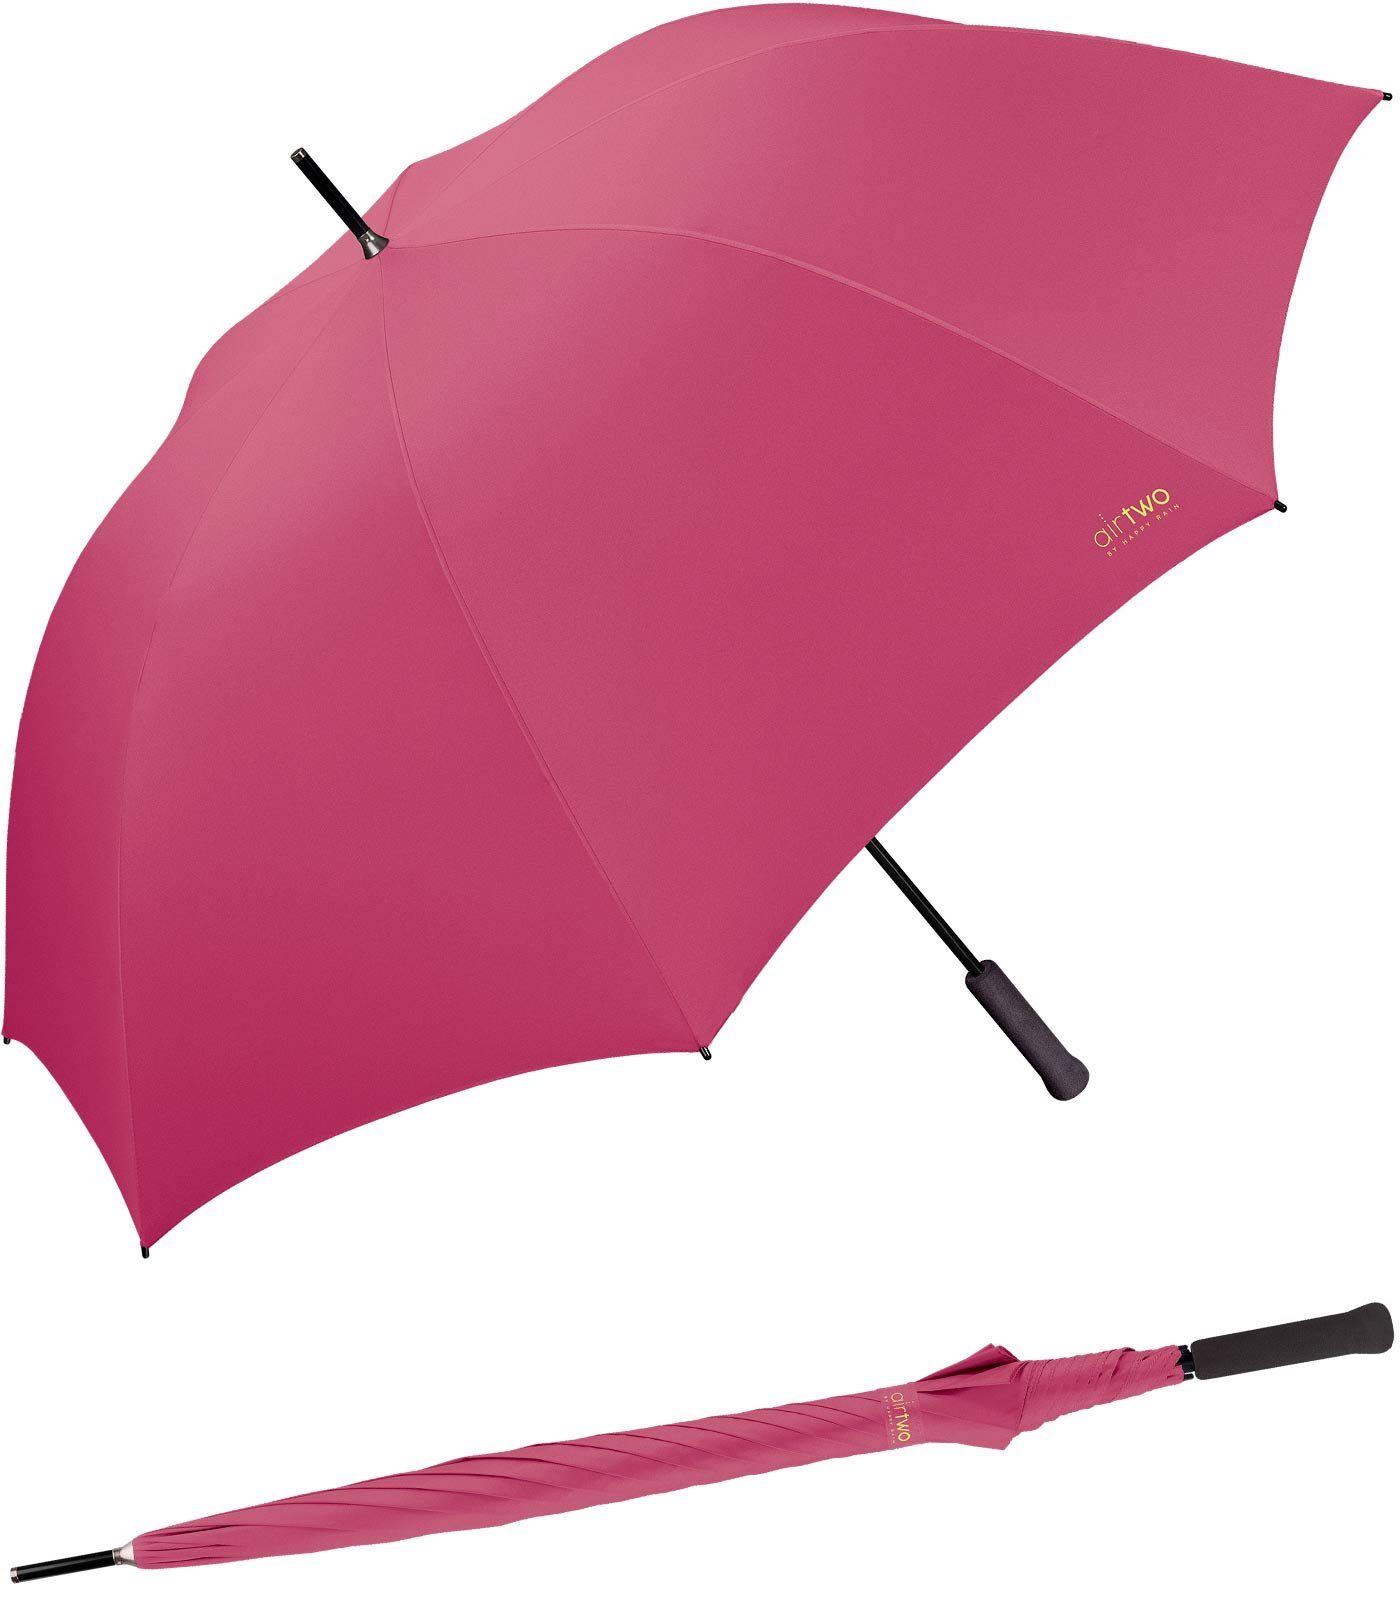 Two Gramm 262 super Partnerschirm, leichter - Air pink RAIN Zwei er wiegt HAPPY für nur Platz Golfregenschirm XXL genug mit